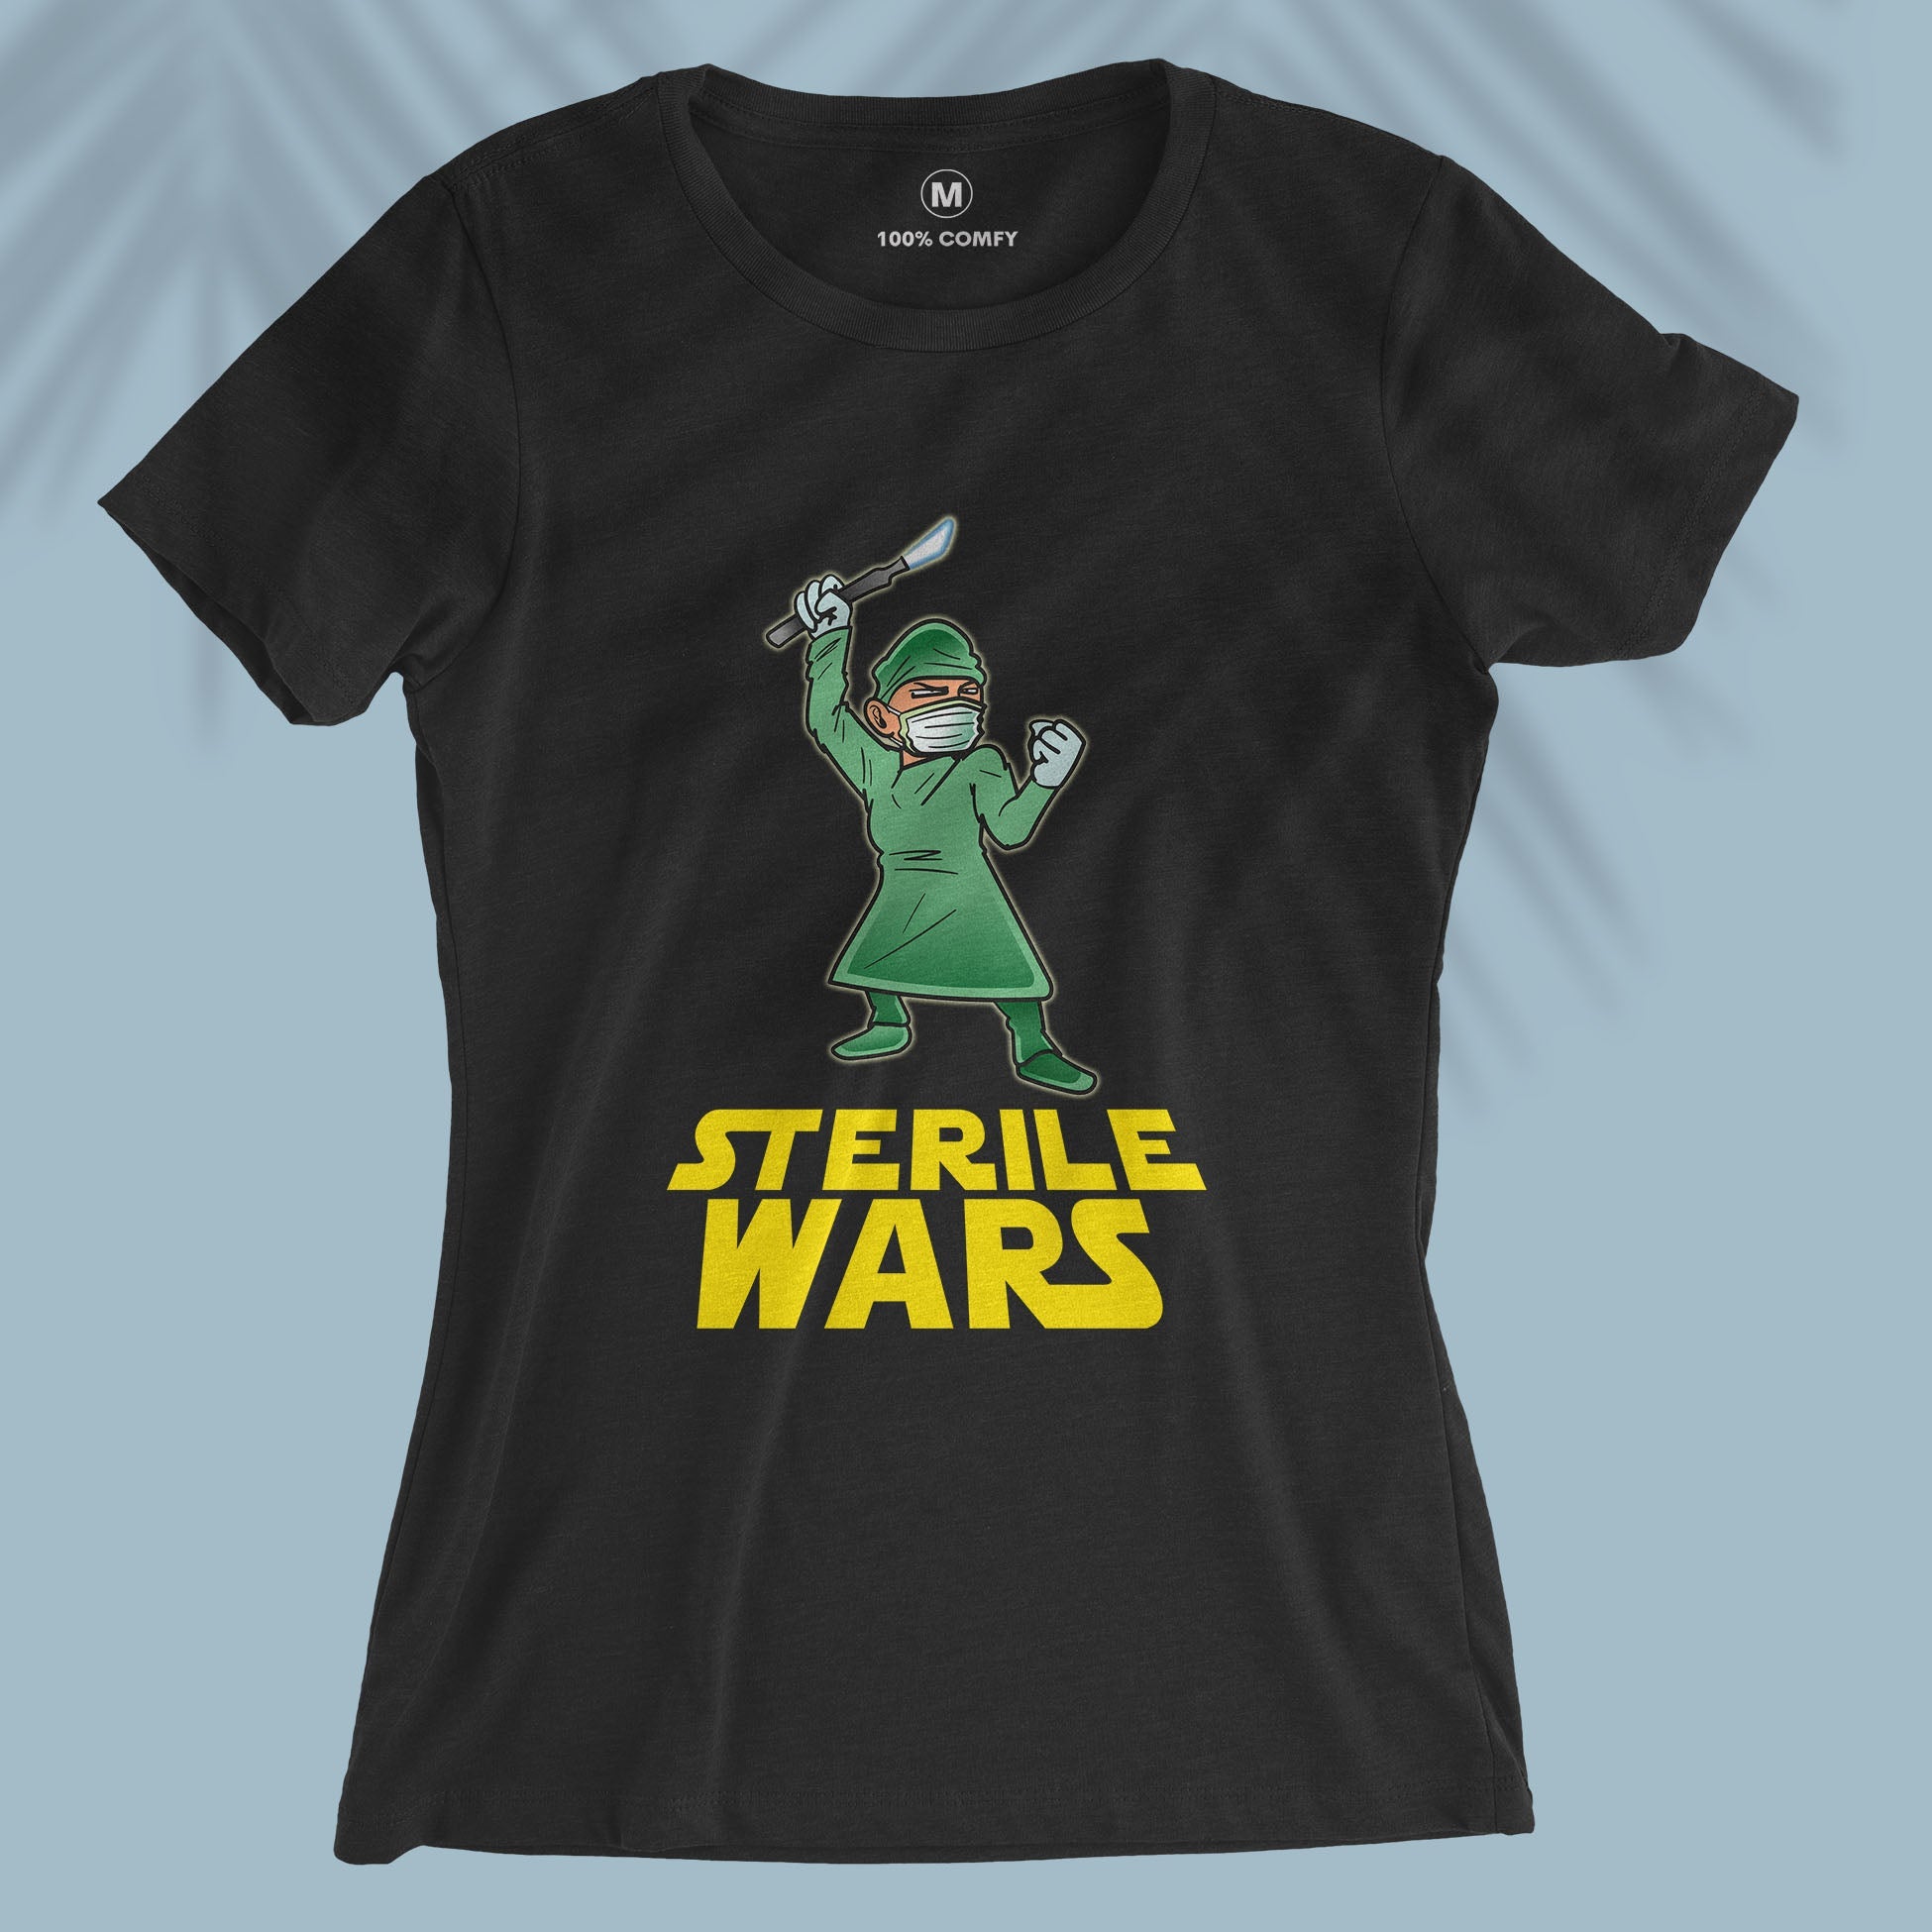 Sterile Wars - Women T-shirt